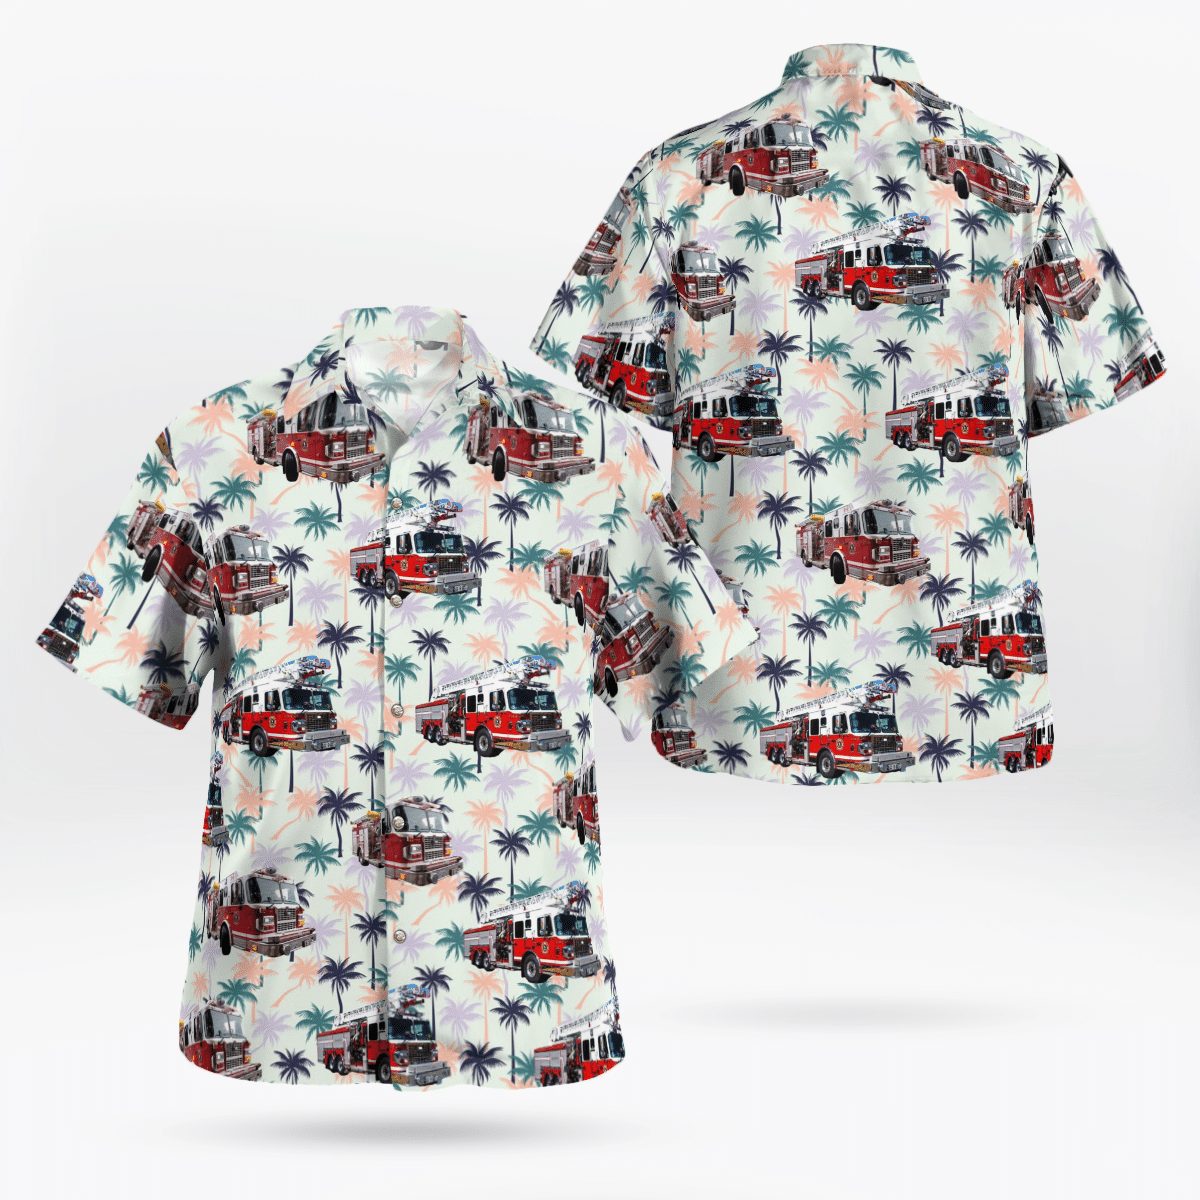 You won't regret buying these Aloha Shirt 179